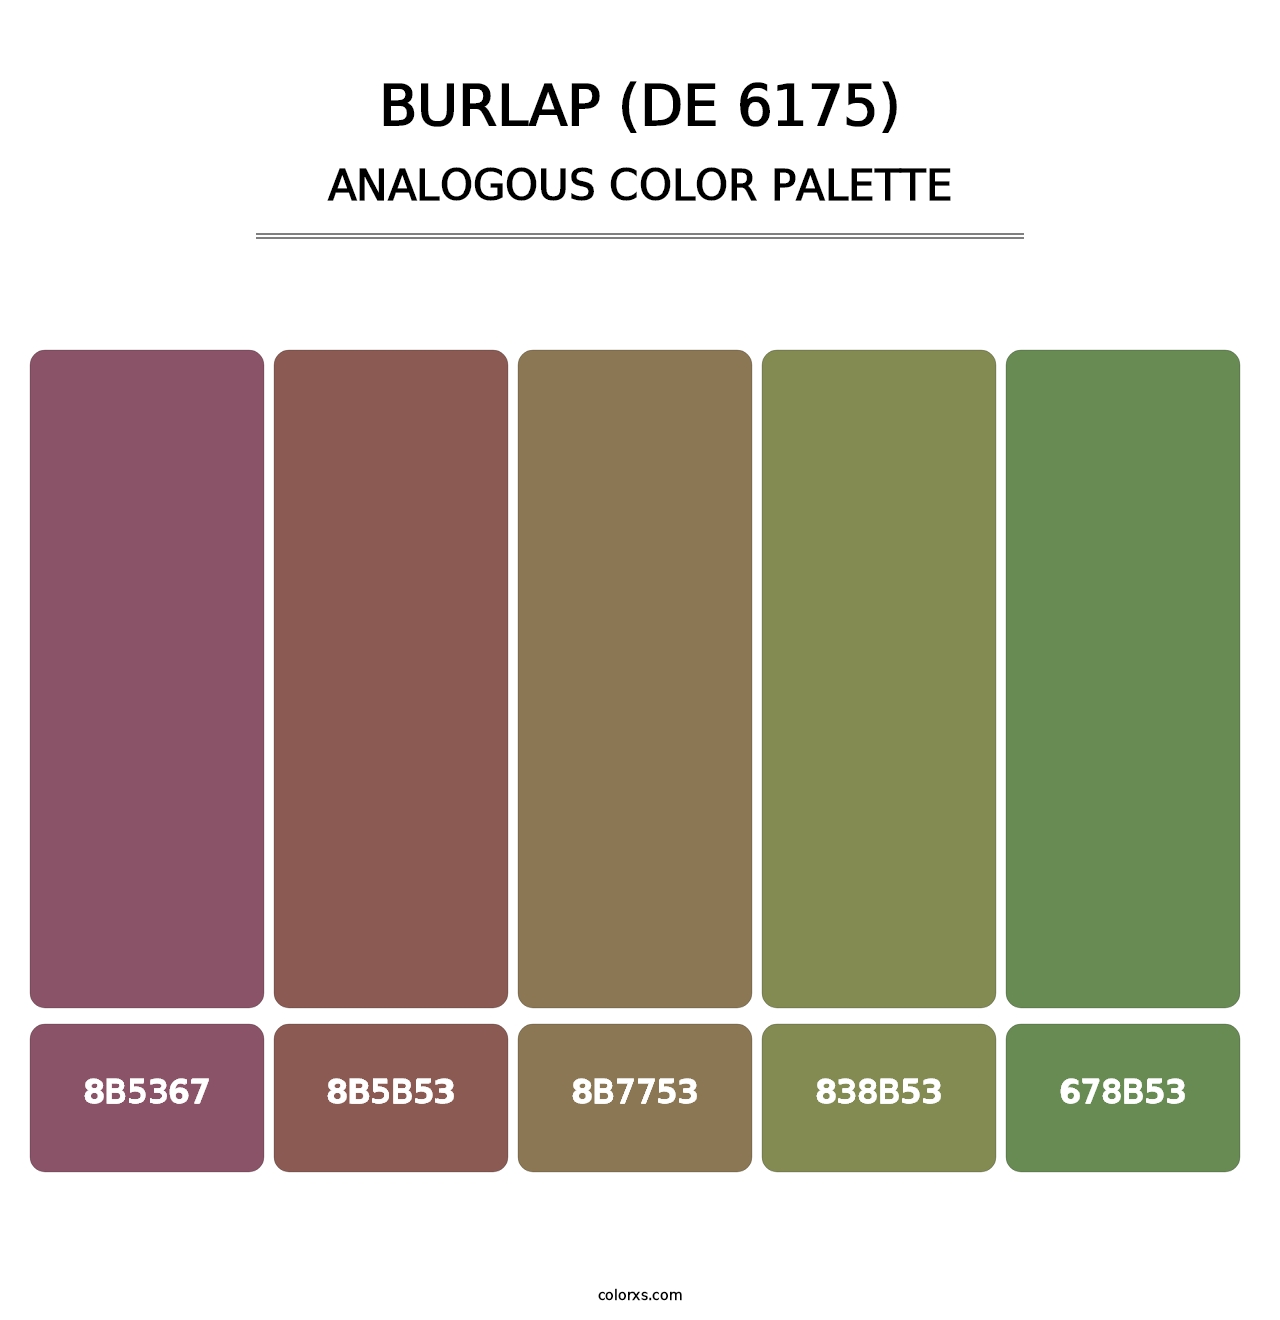 Burlap (DE 6175) - Analogous Color Palette